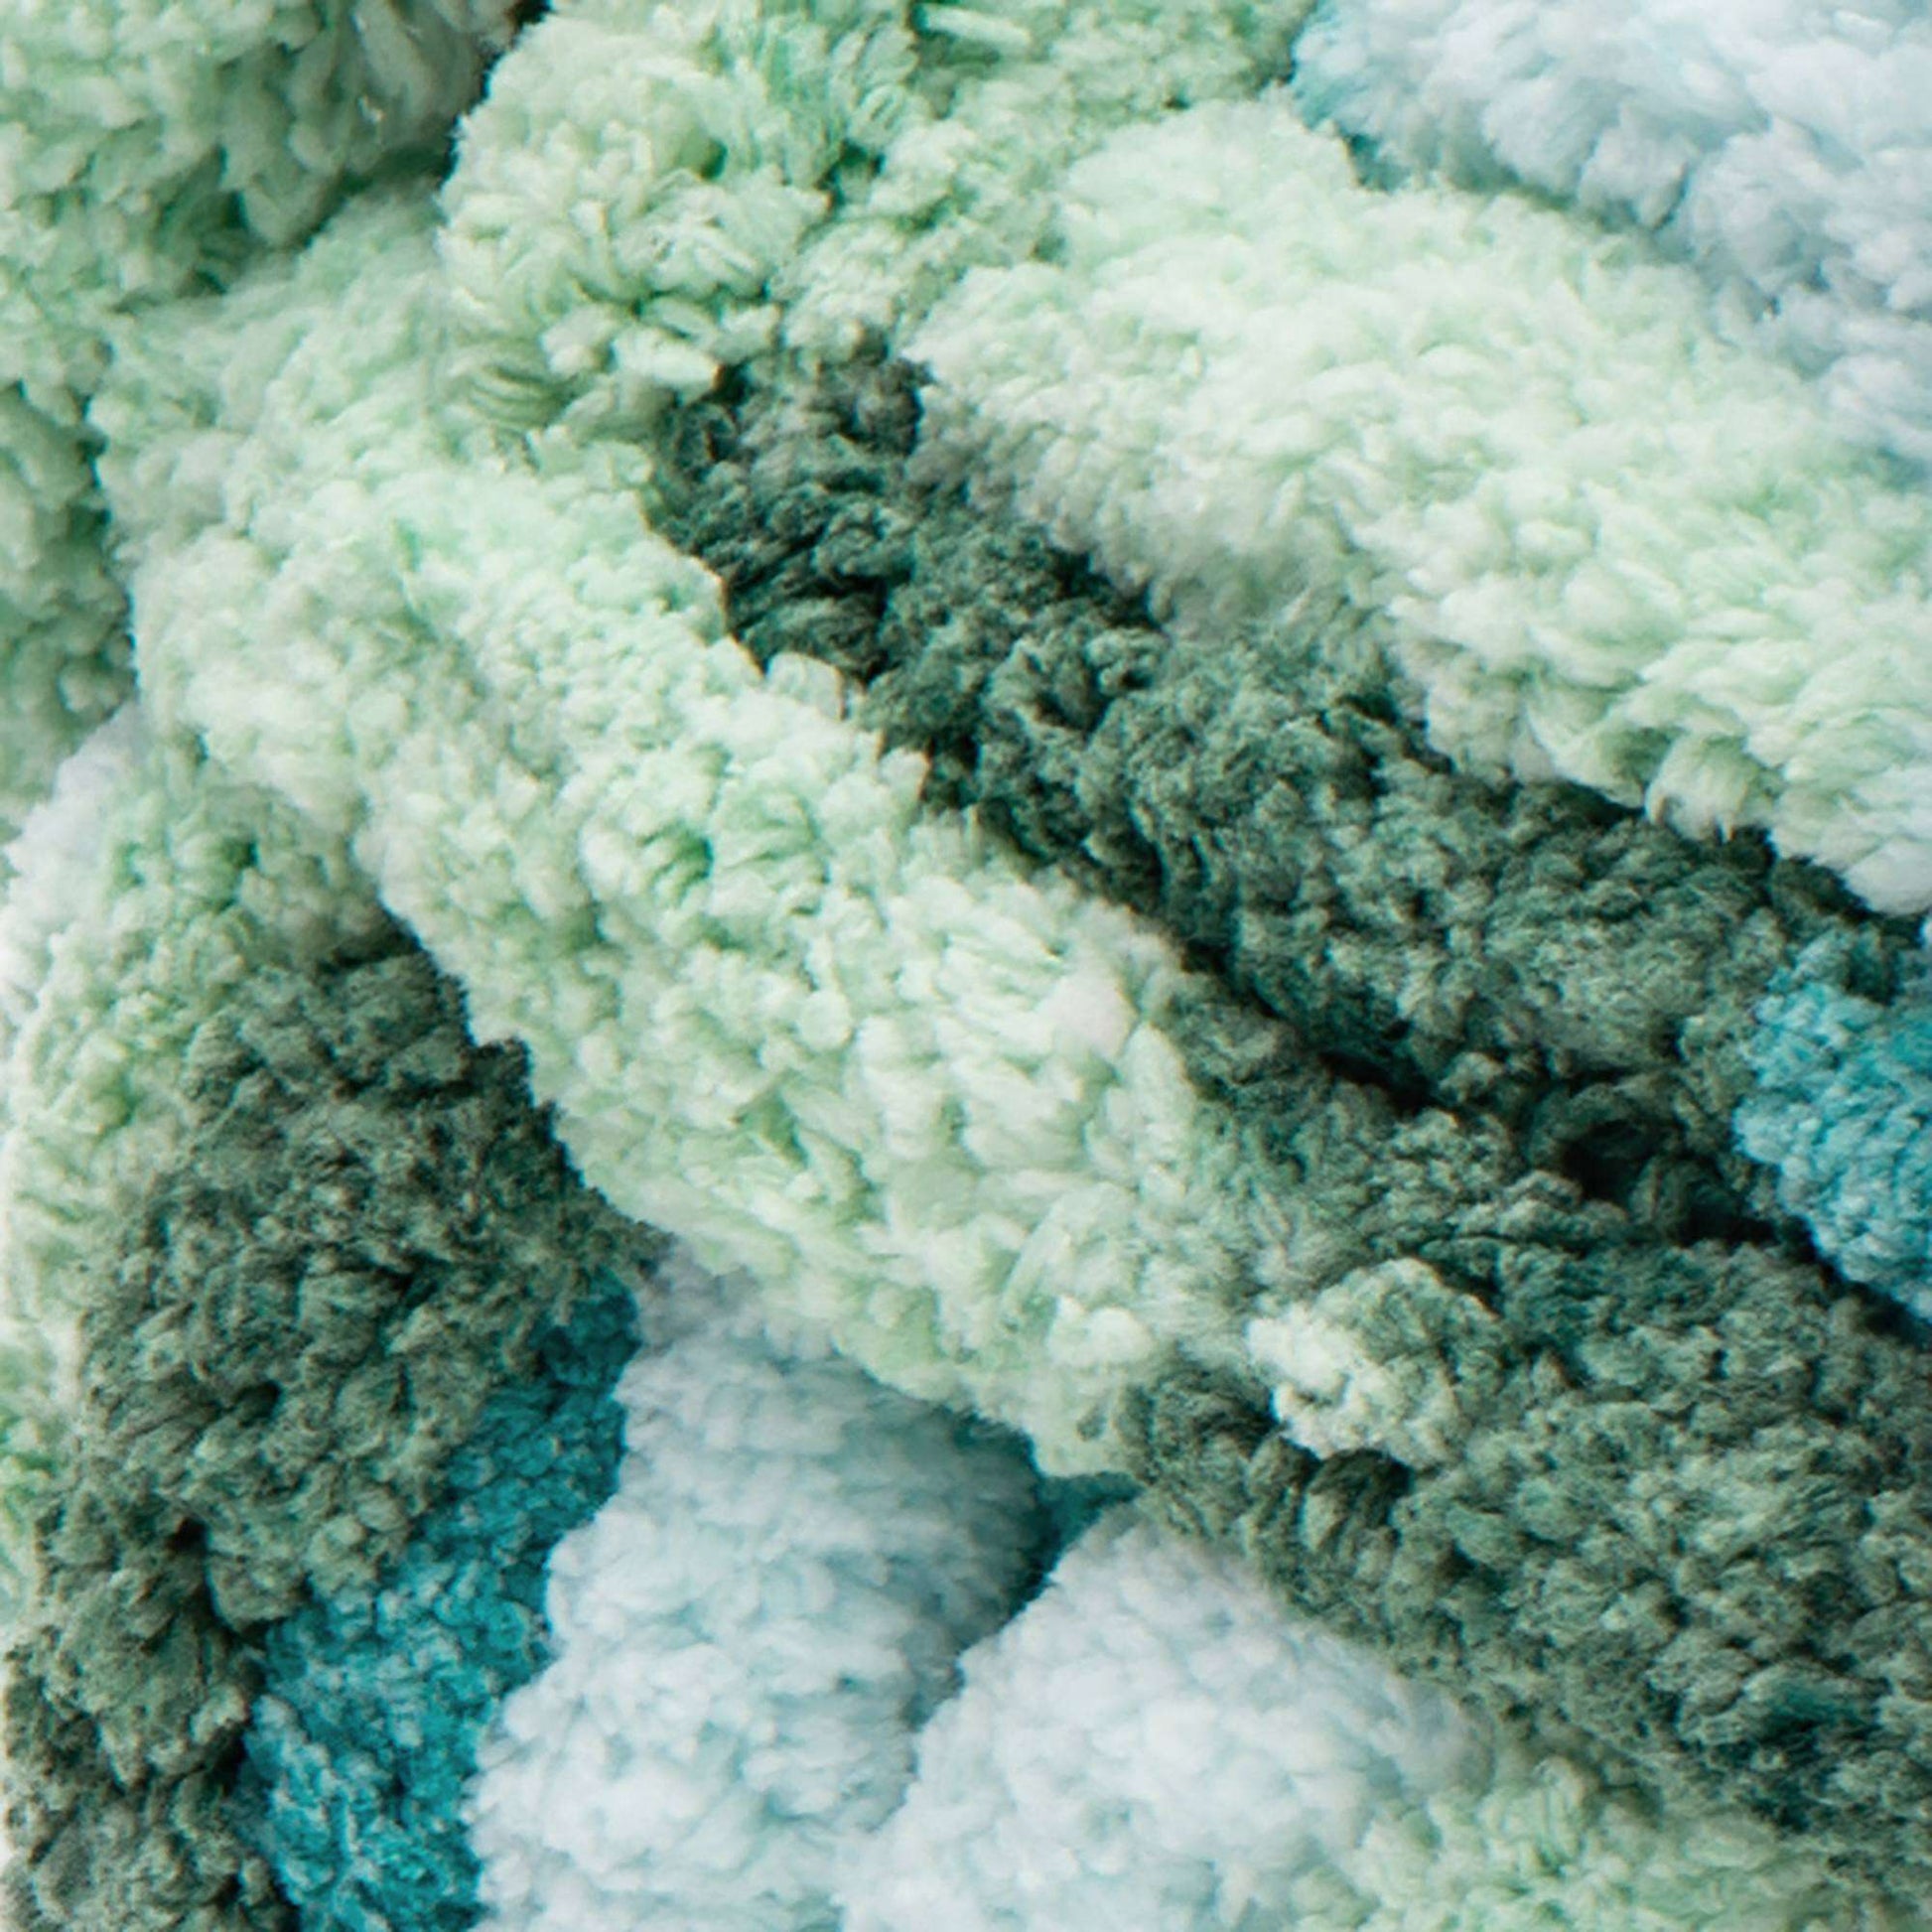 Bernat Blanket Extra Thick Blue Raspberry Yarn-1 Pack of  600g/21oz-Polyester-7 Jumbo-Knitting/Crochet